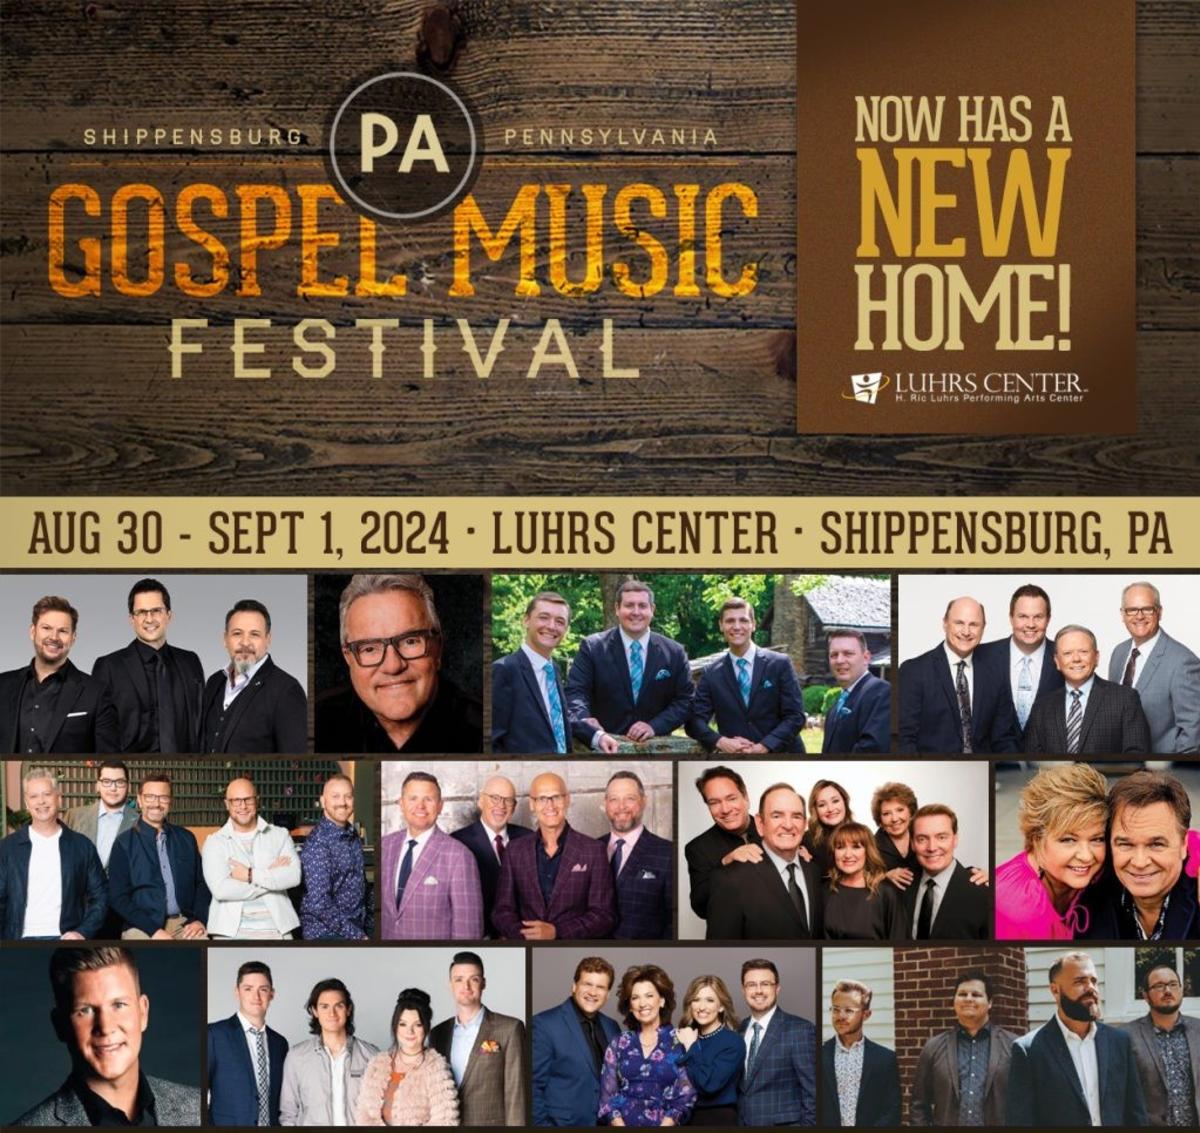 PA Gospel Music Festival